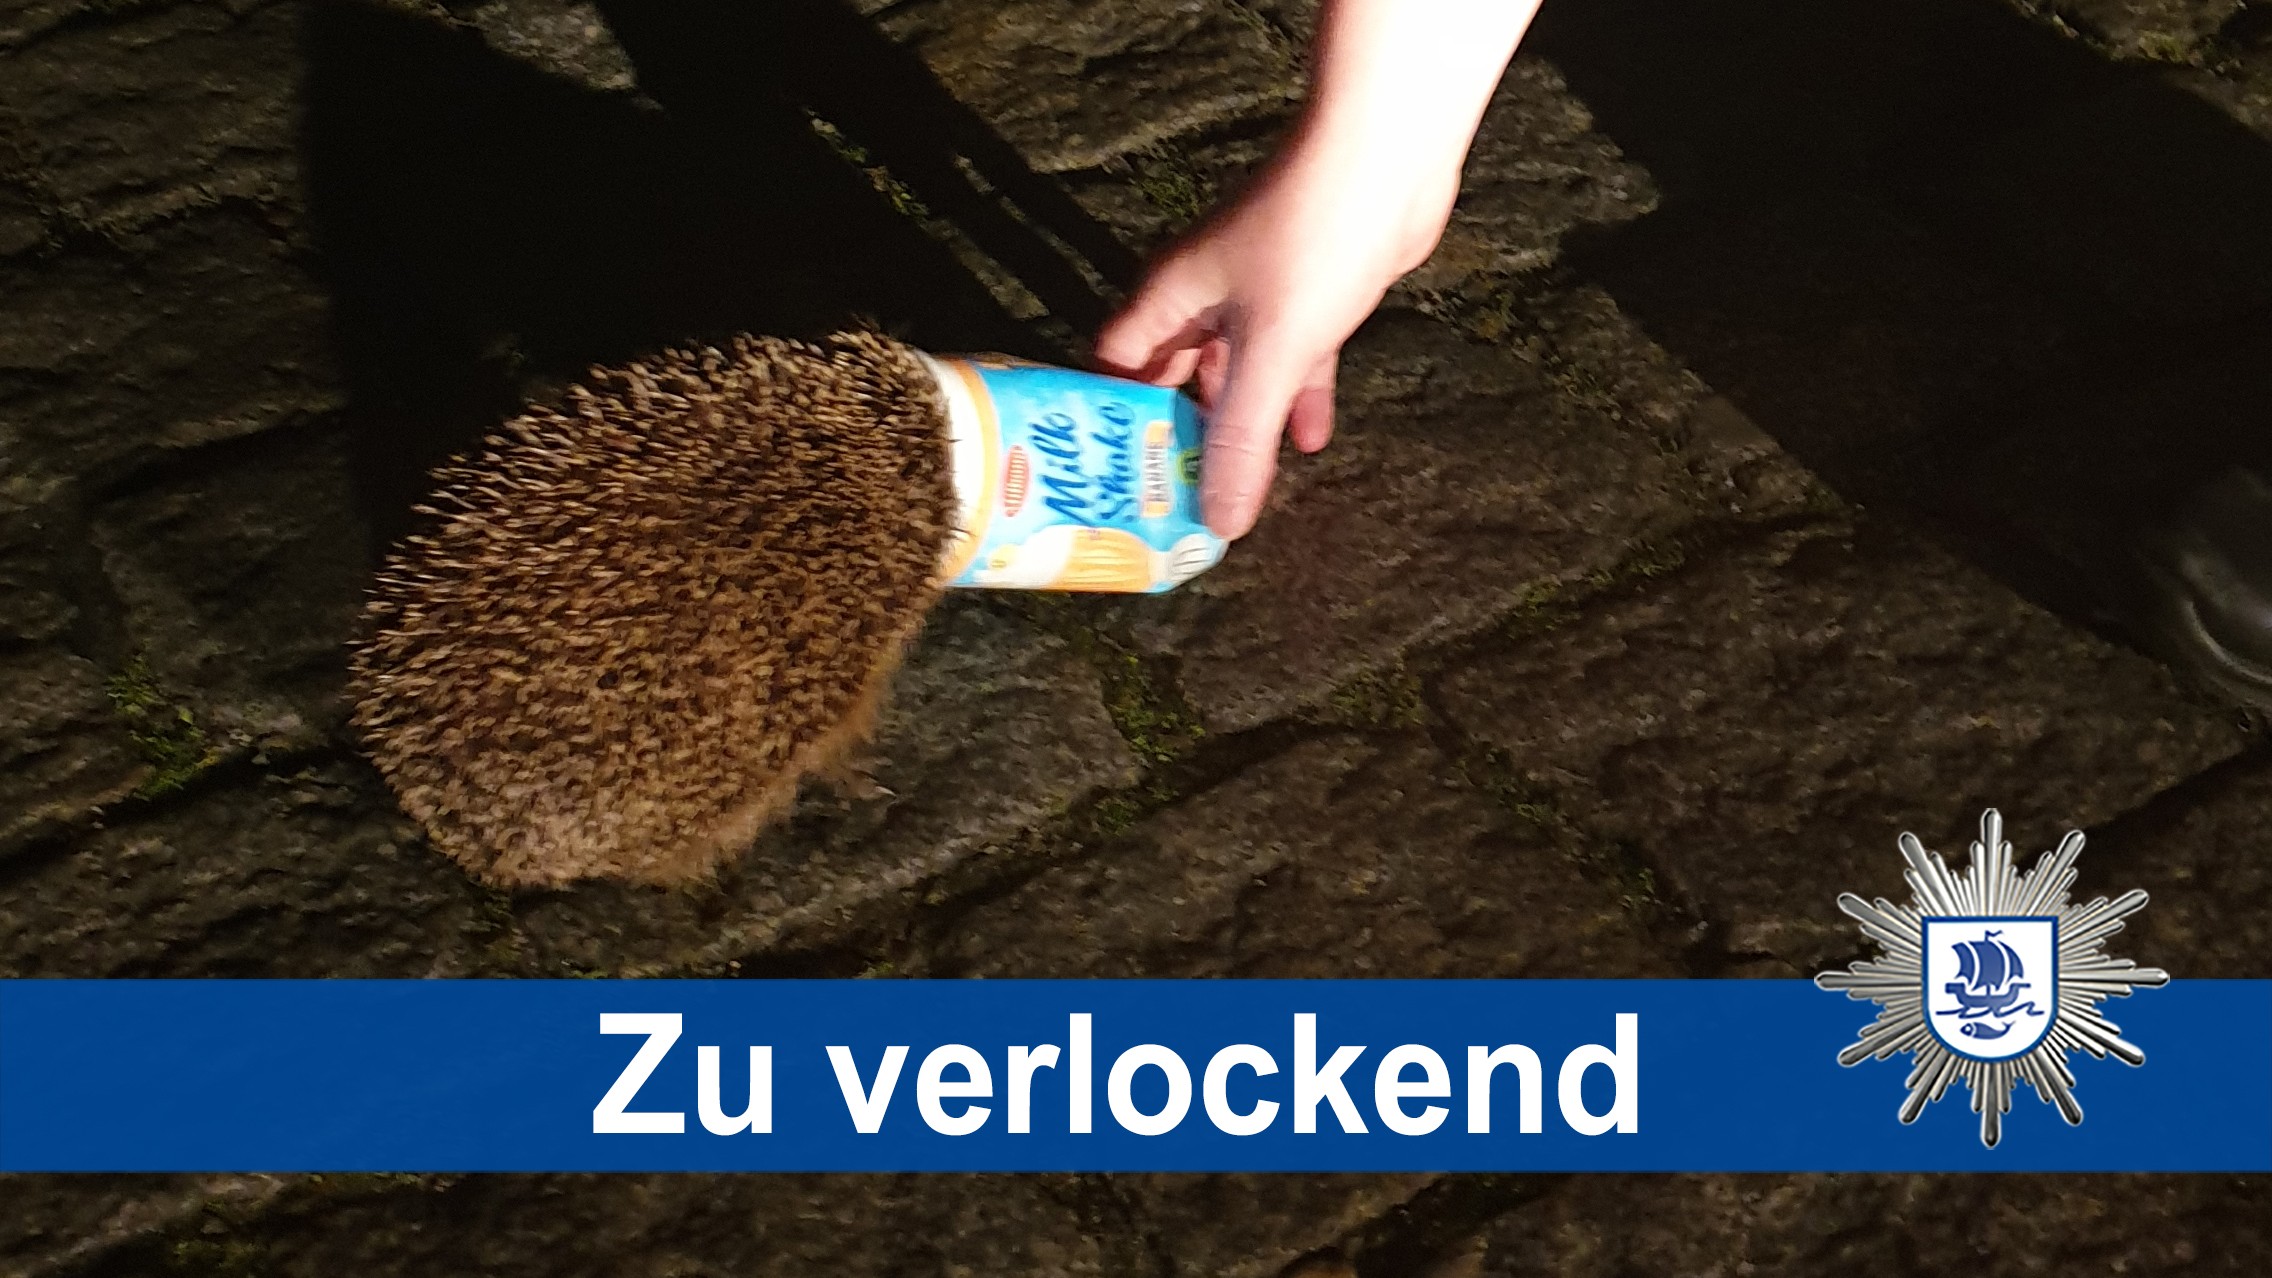 Polícia resgata ouriço preso em copo de milk-shake na Alemanha thumbnail